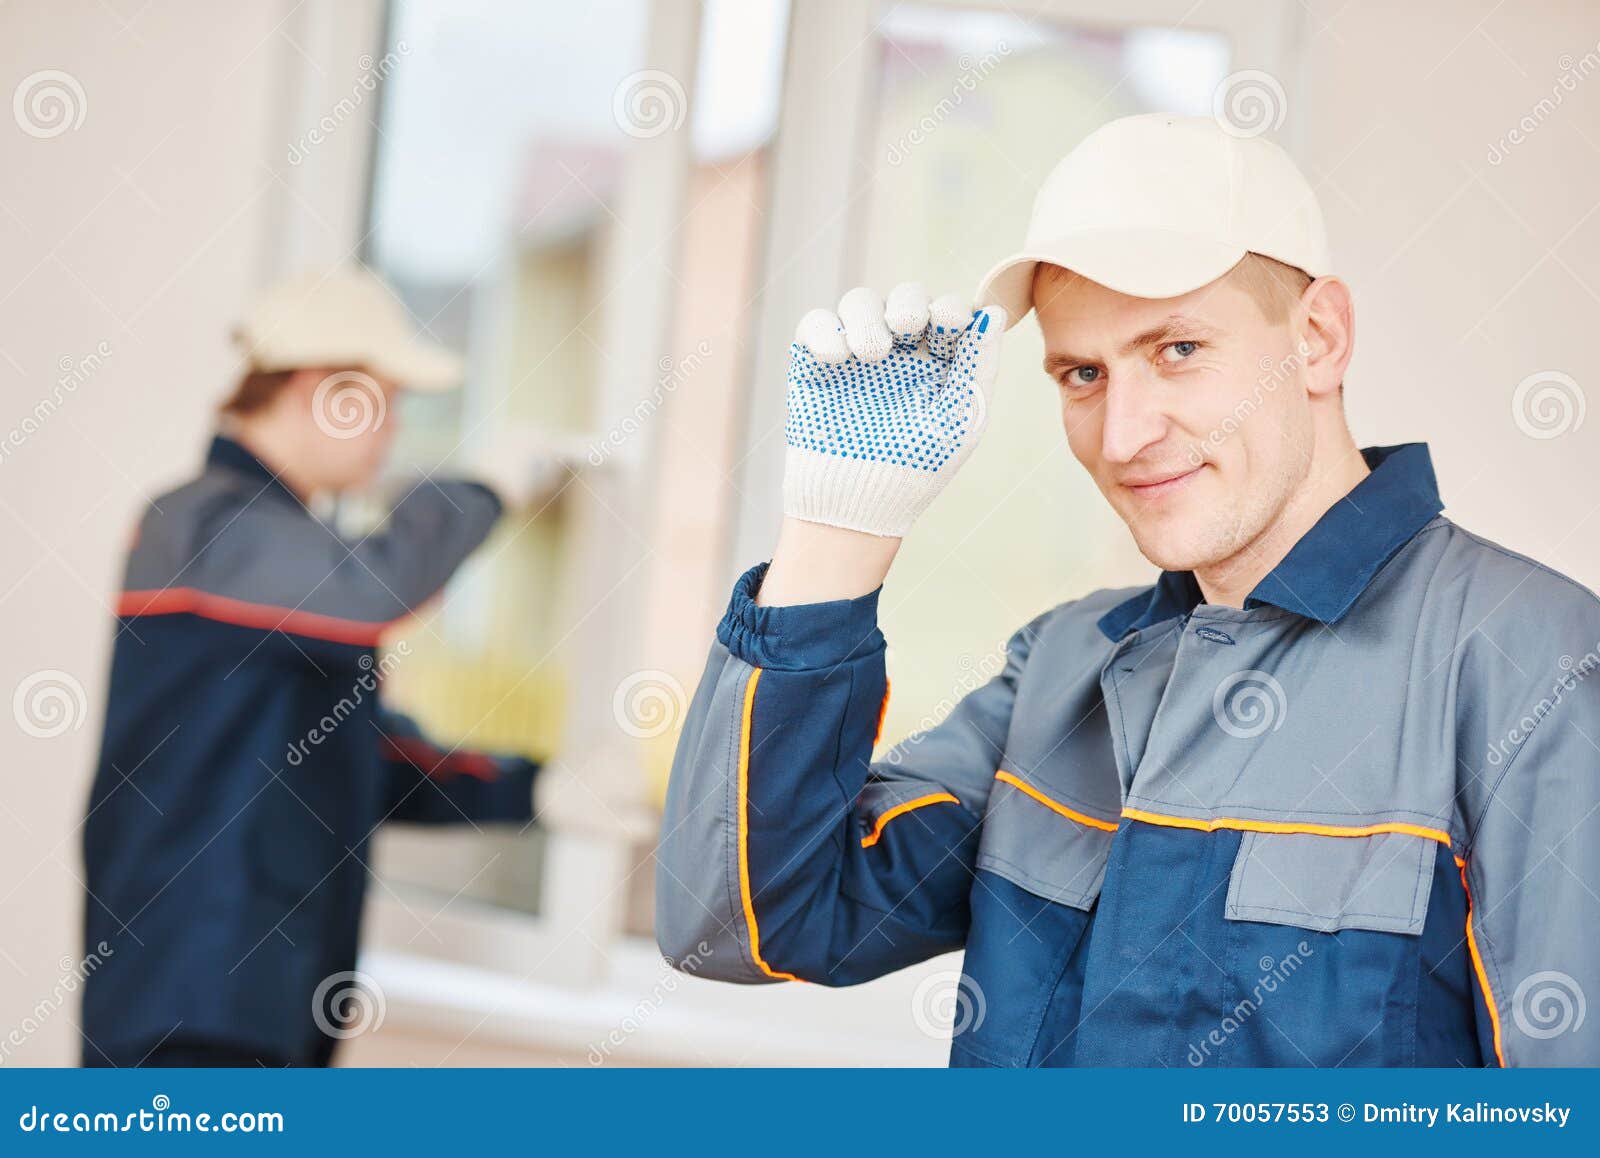 window installation worker